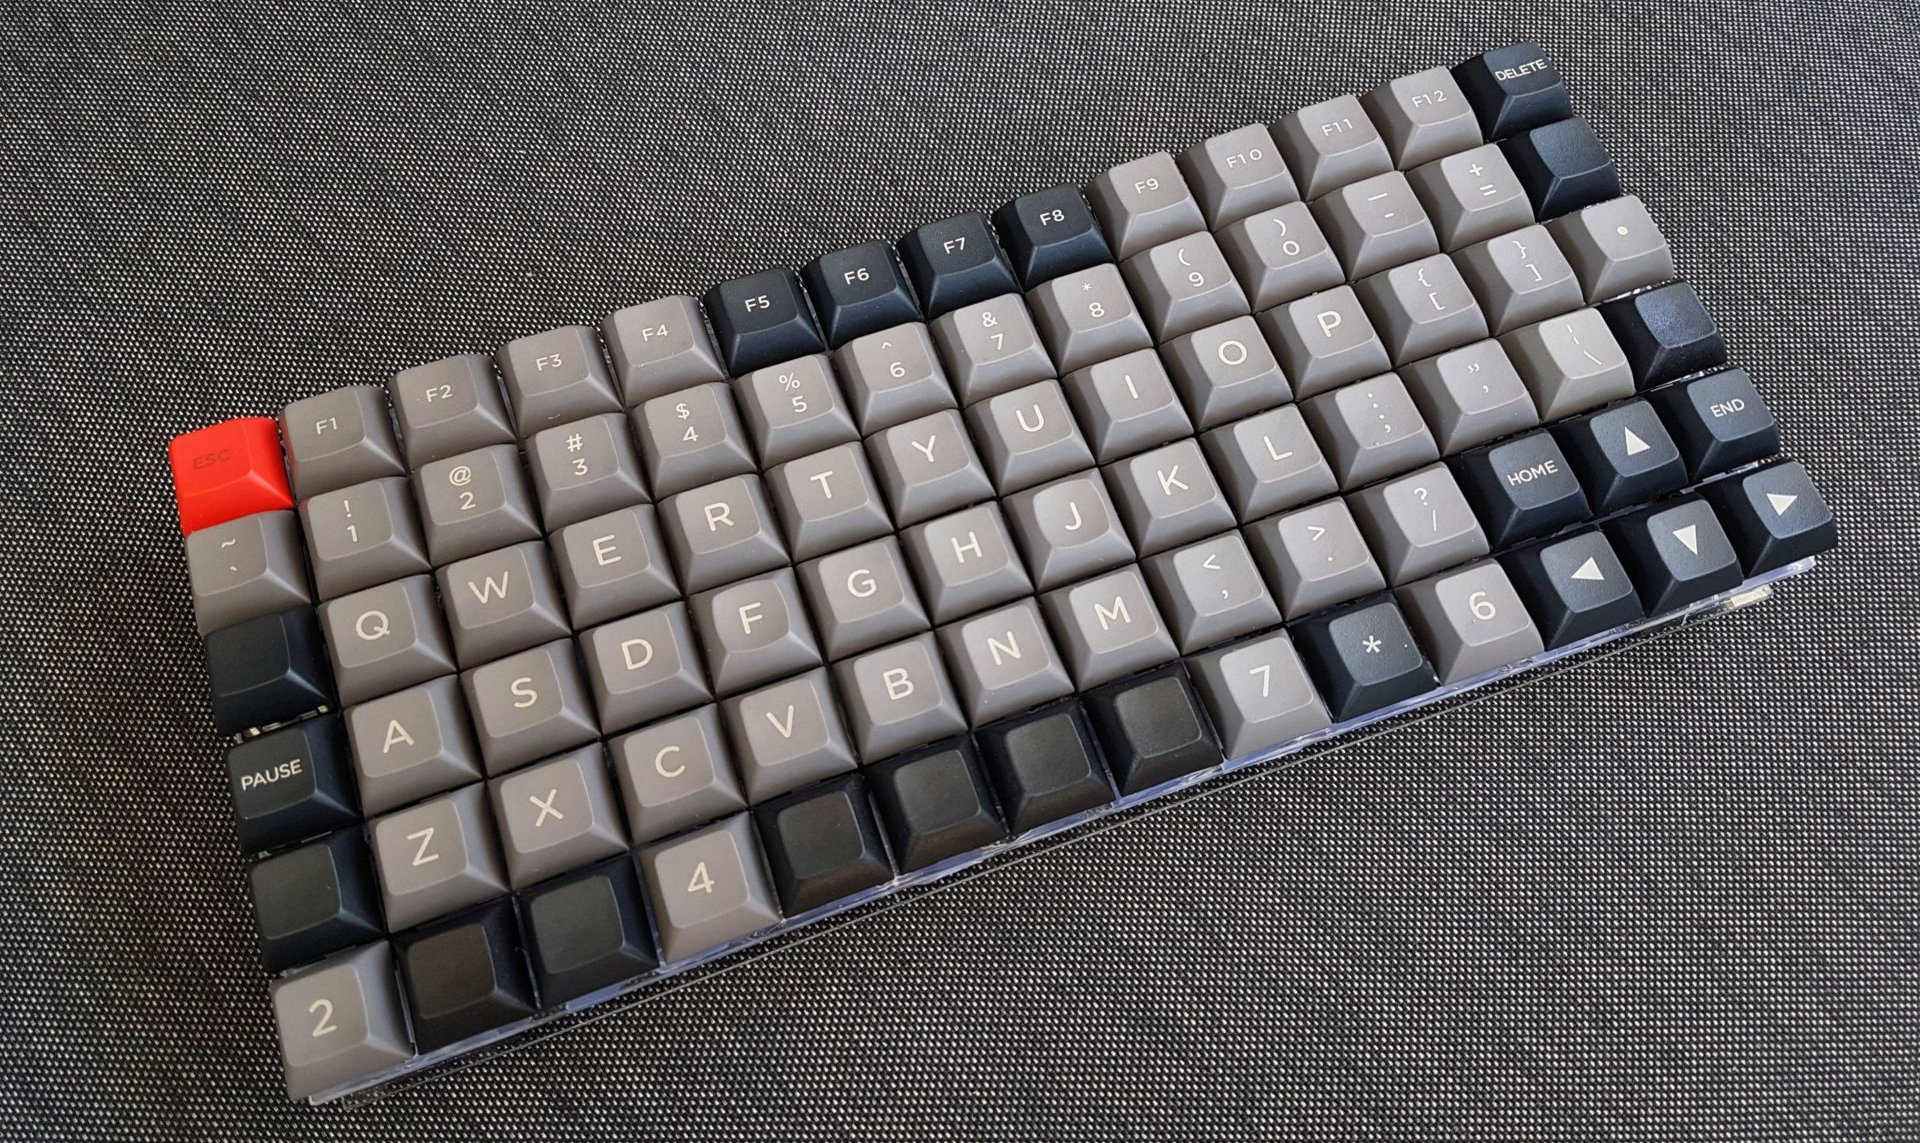 Someone made a 14x6 ortholinear keyboard